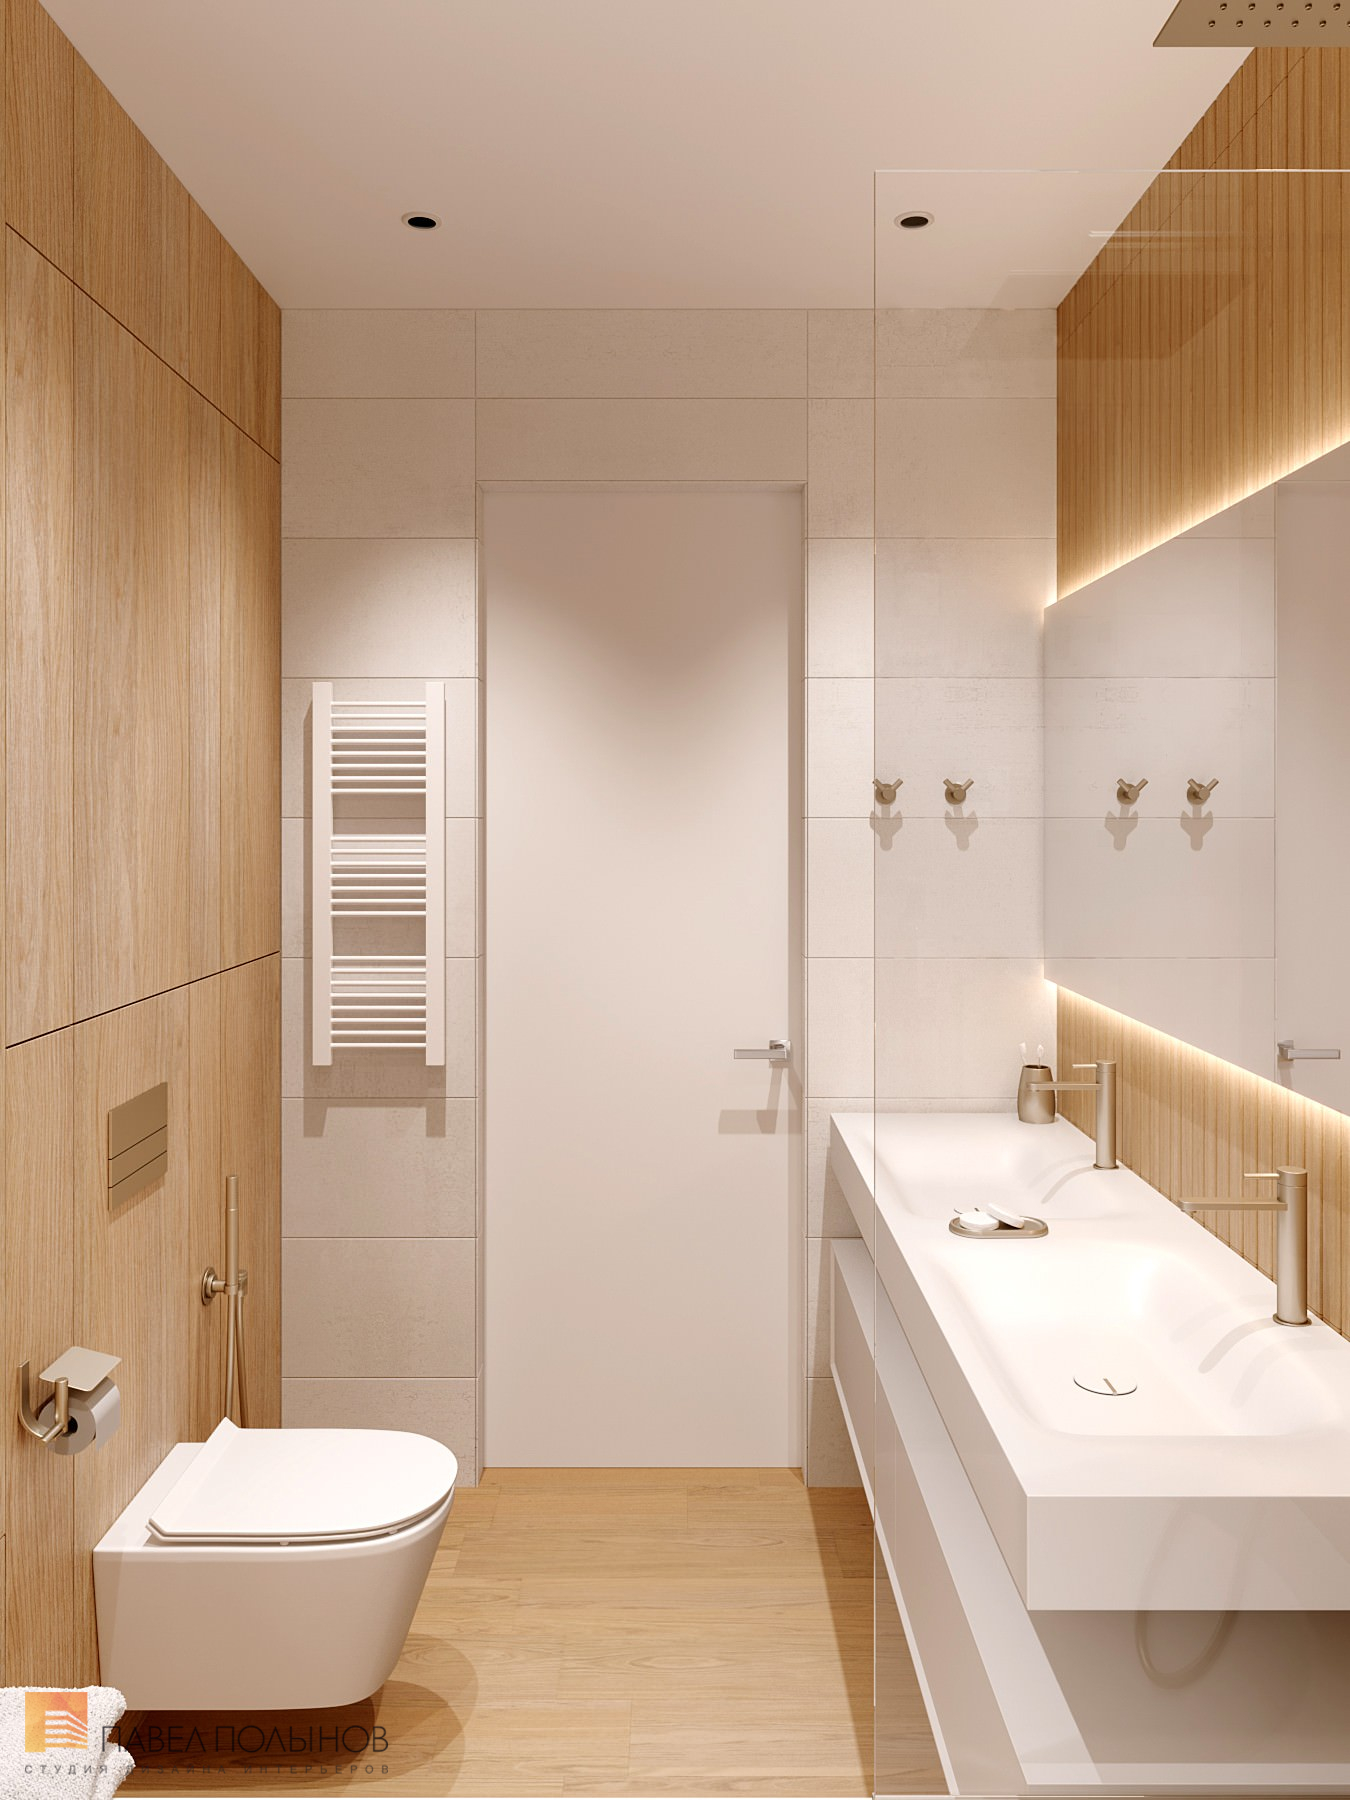 Фото дизайн интерьера ванной комнаты из проекта «Квартира в современном стиле, ЖК «Дом на Зелейной», 142 кв.м.»